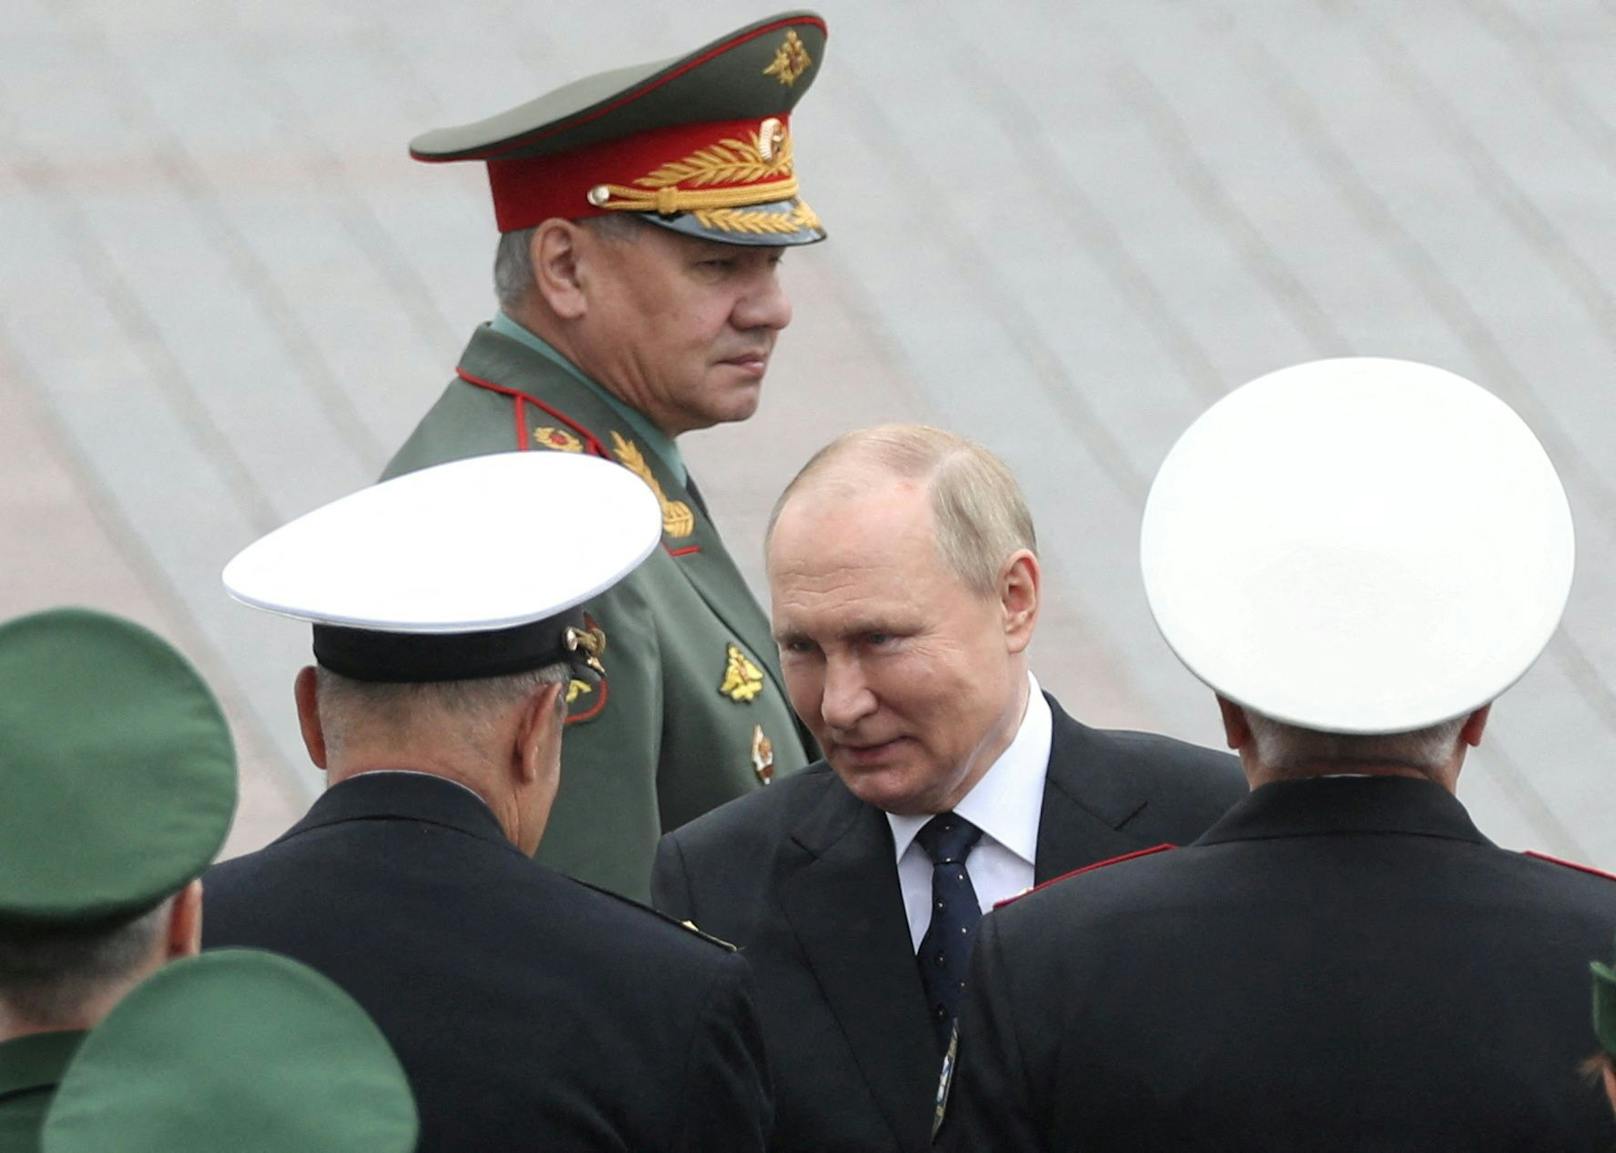 CIA-Direktor nennt Putins wohl größten Schwachpunkt